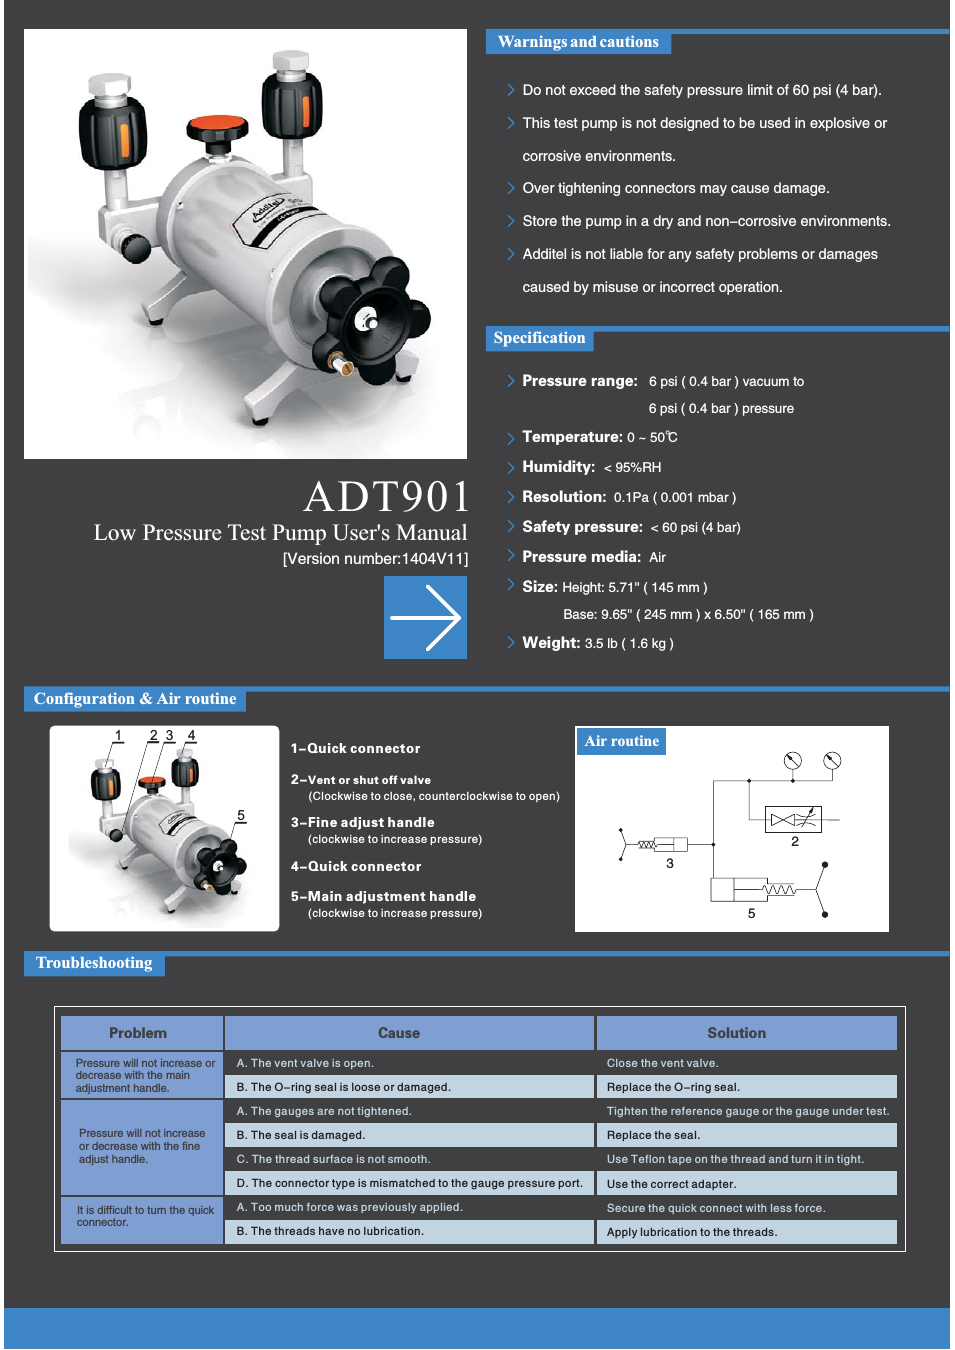 901 Low Pressure Test Pump User Manual